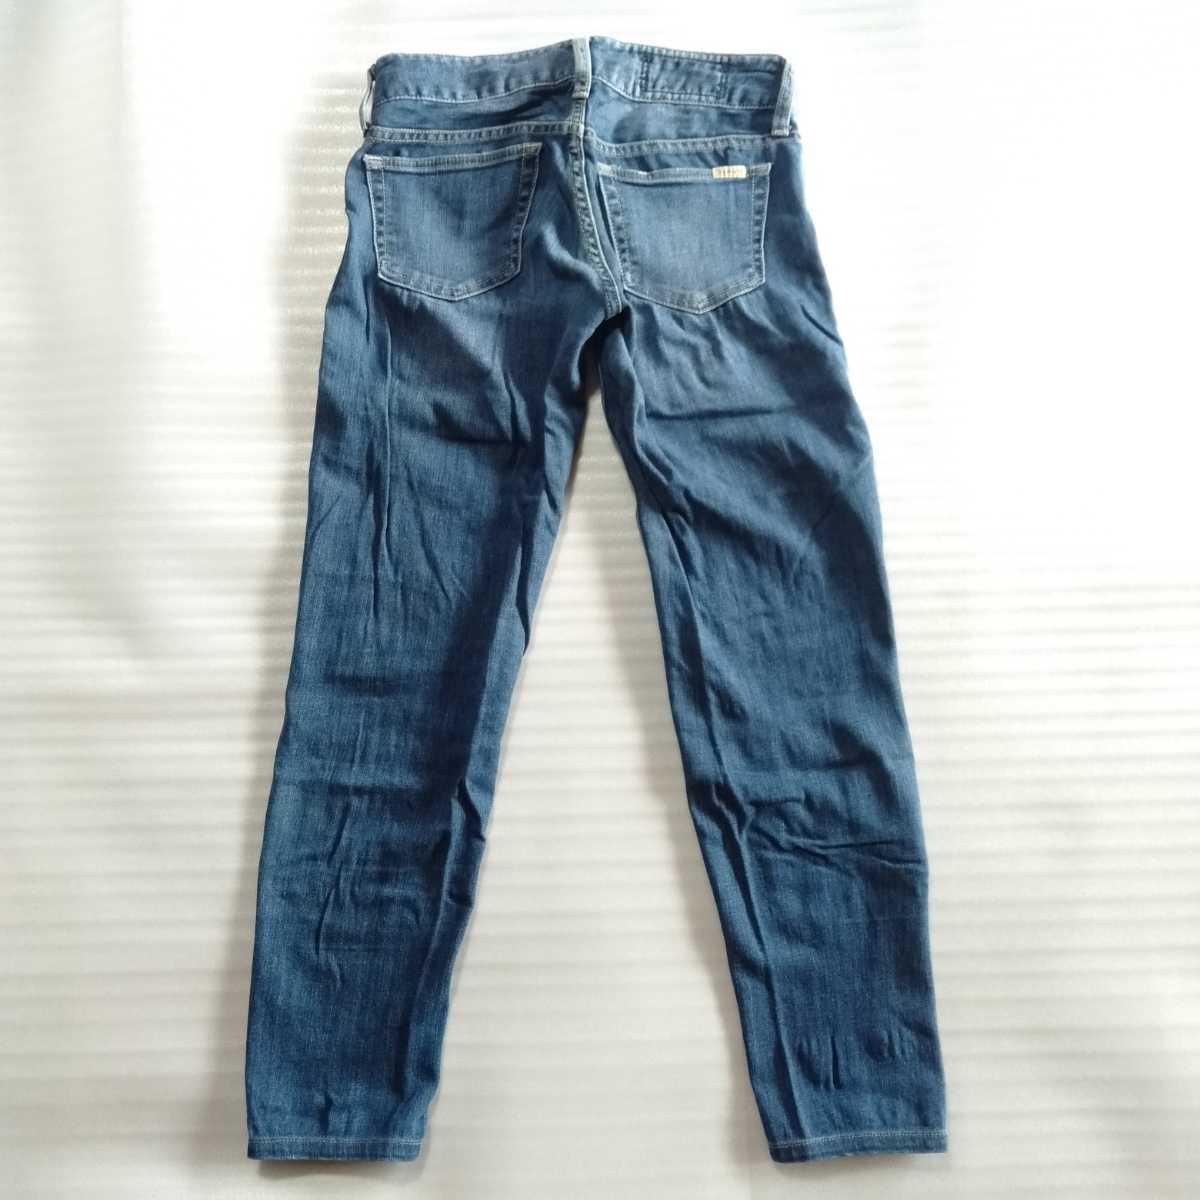 送料無料】sly jeansデニムパンツ サイズ23インチ スリムテーパード used加工ユーズド加工 スライジーンズ_画像2